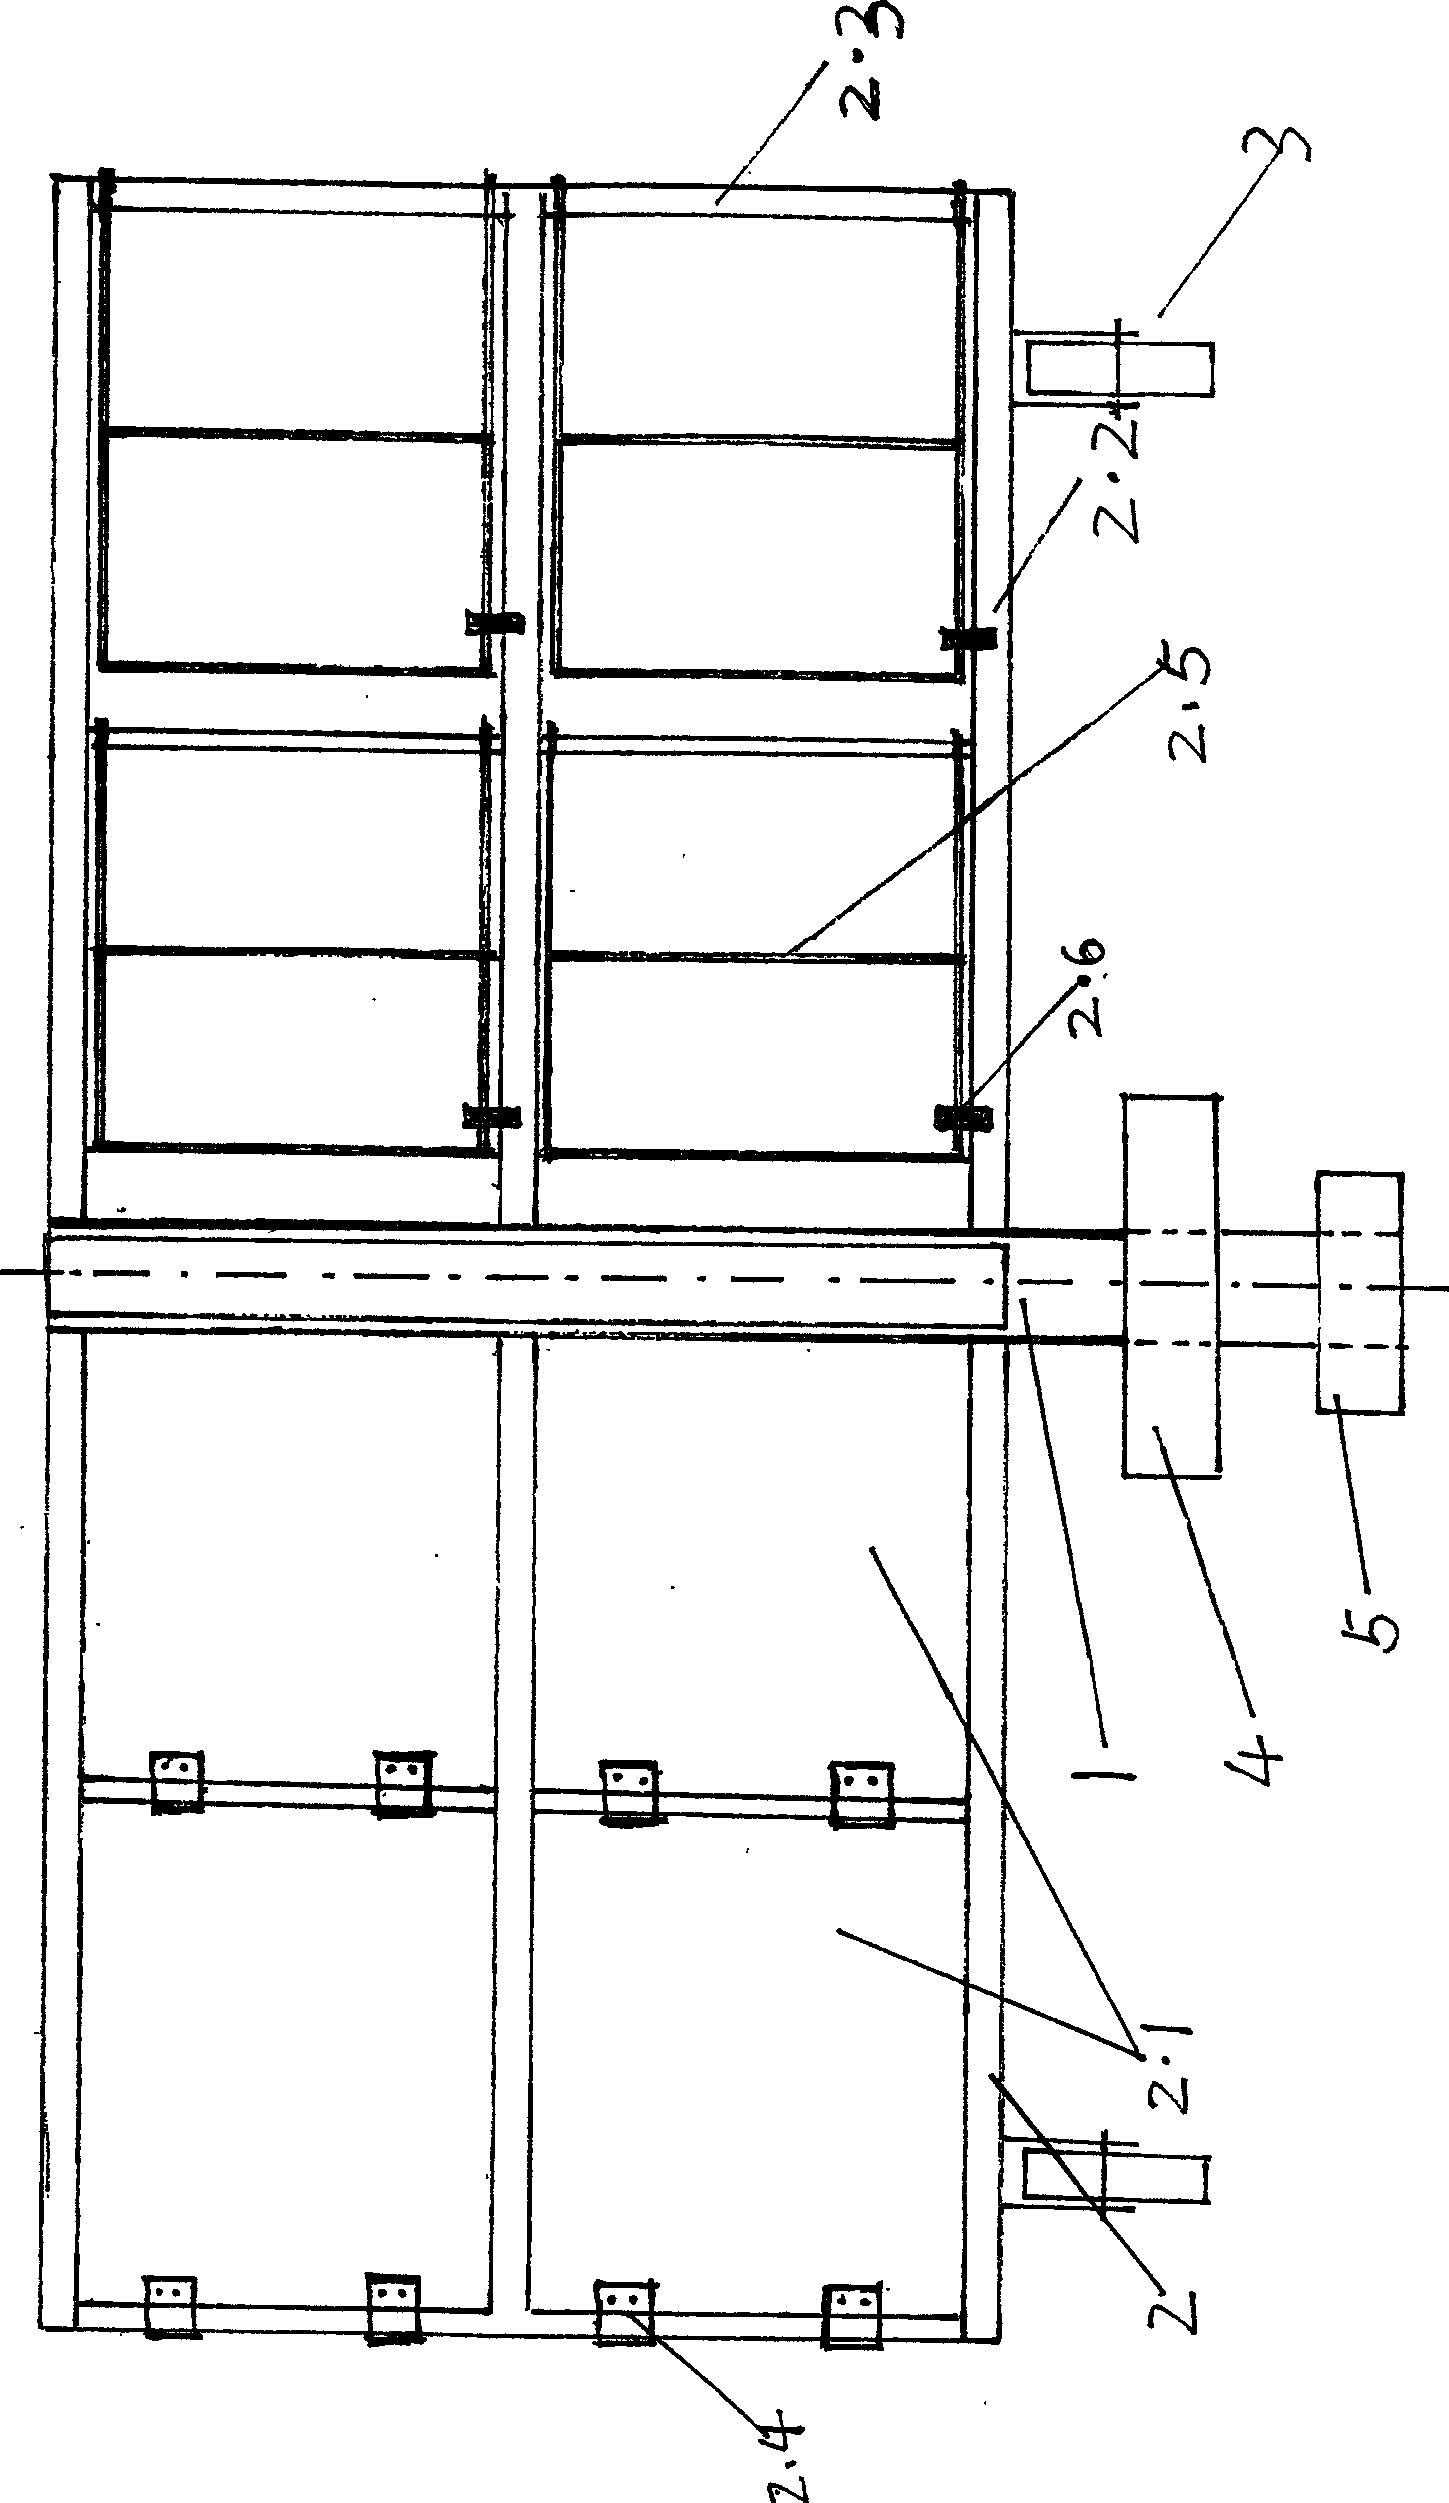 Door case type water (wind) turbine